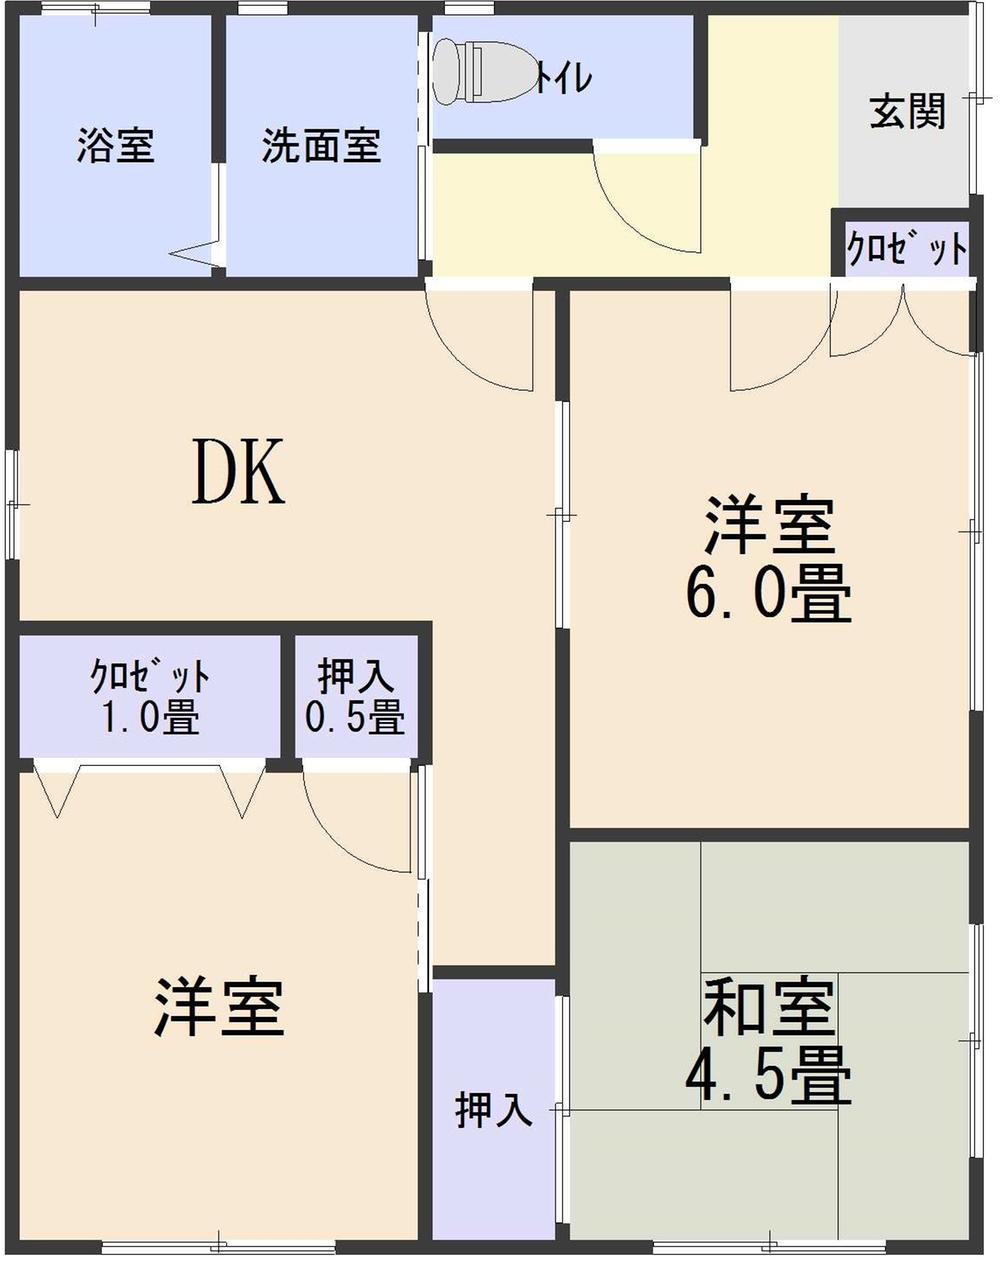 Floor plan. 9.8 million yen, 3DK, Land area 178.49 sq m , Building area 52.17 sq m